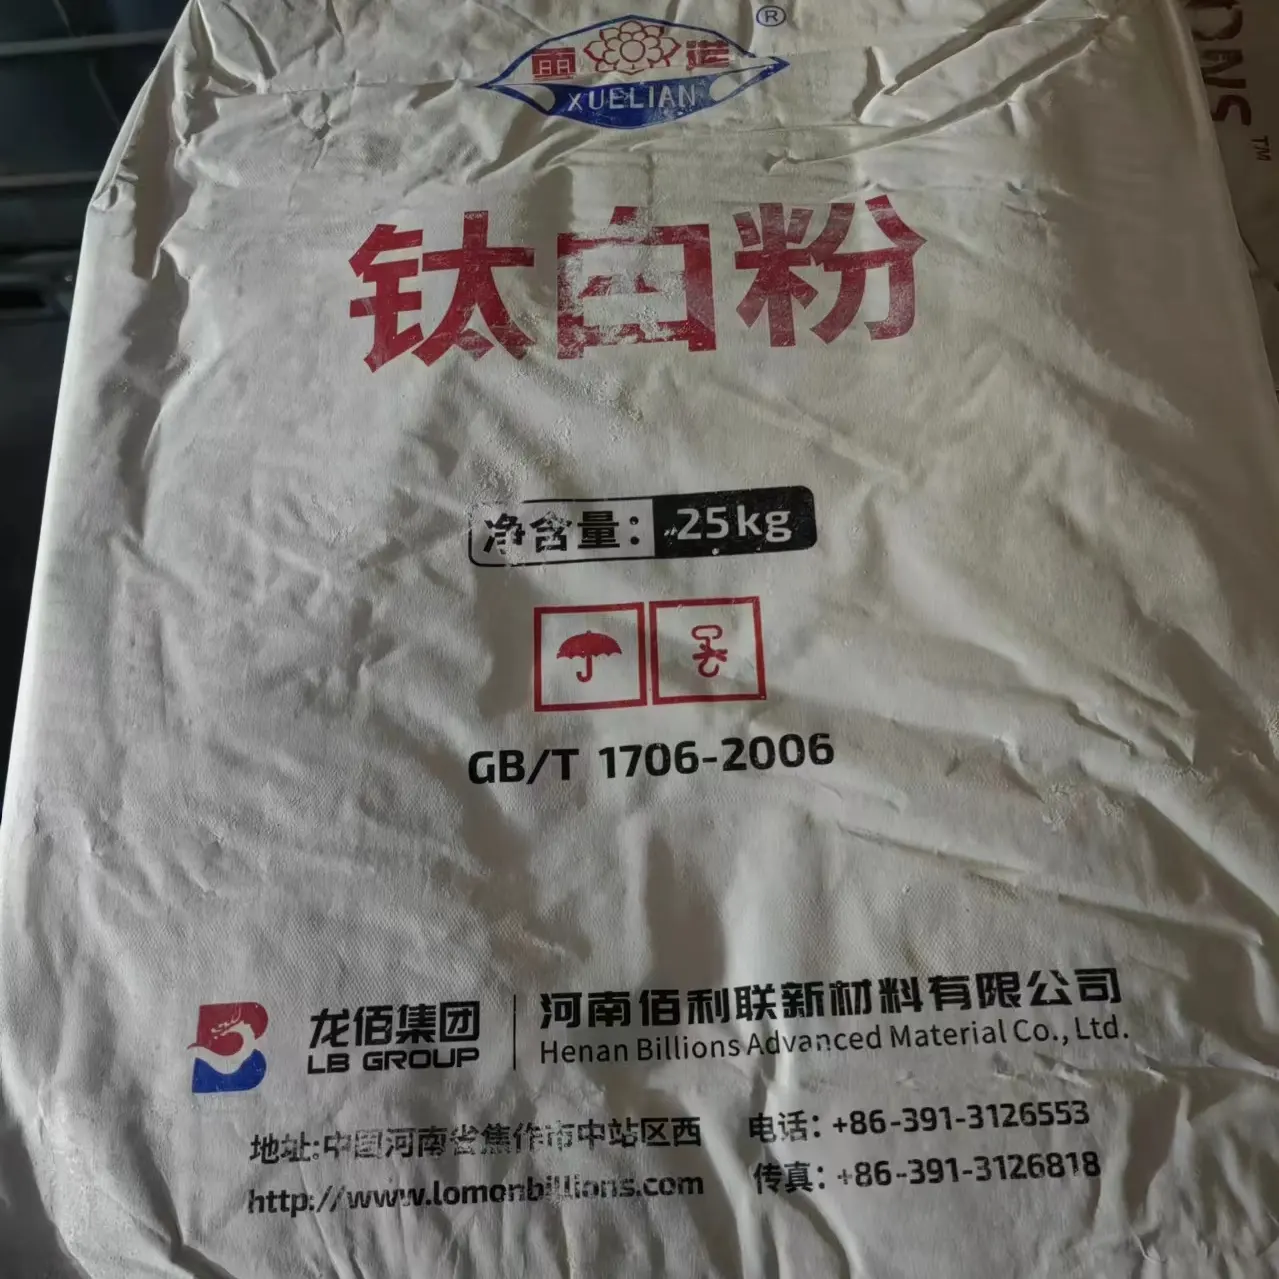 لومون تيتانيوم ثنائي أكسيد tio2 روتييل 996 تيتانيوم ثنائي أكسيد صبغة مصنوعة في الصين ثاني أكسيد التيتانيوم 895